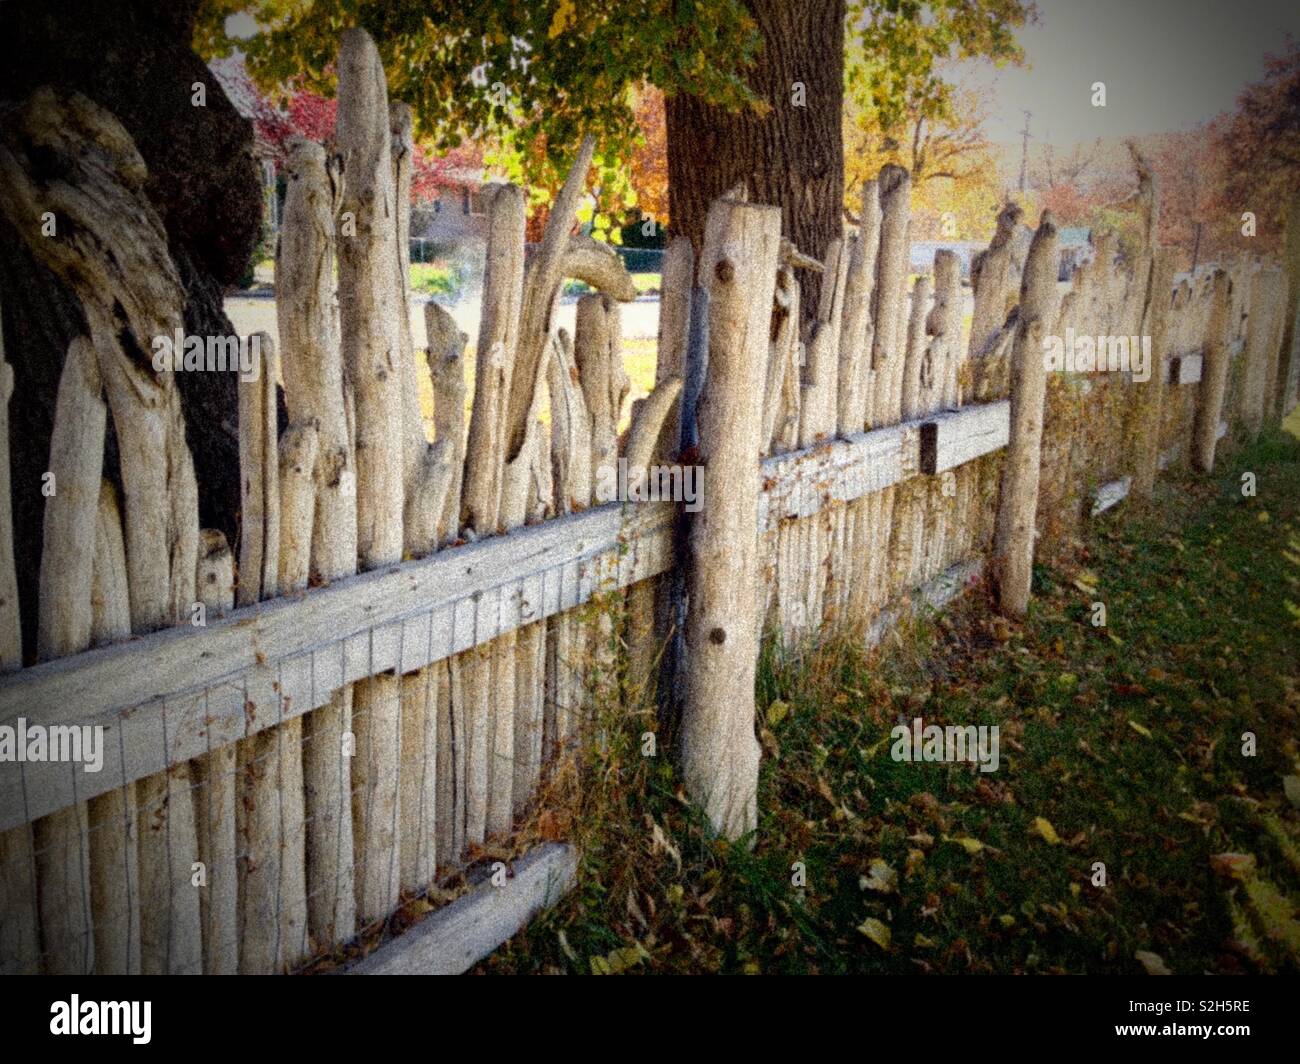 Driftwood fence on November Stock Photo